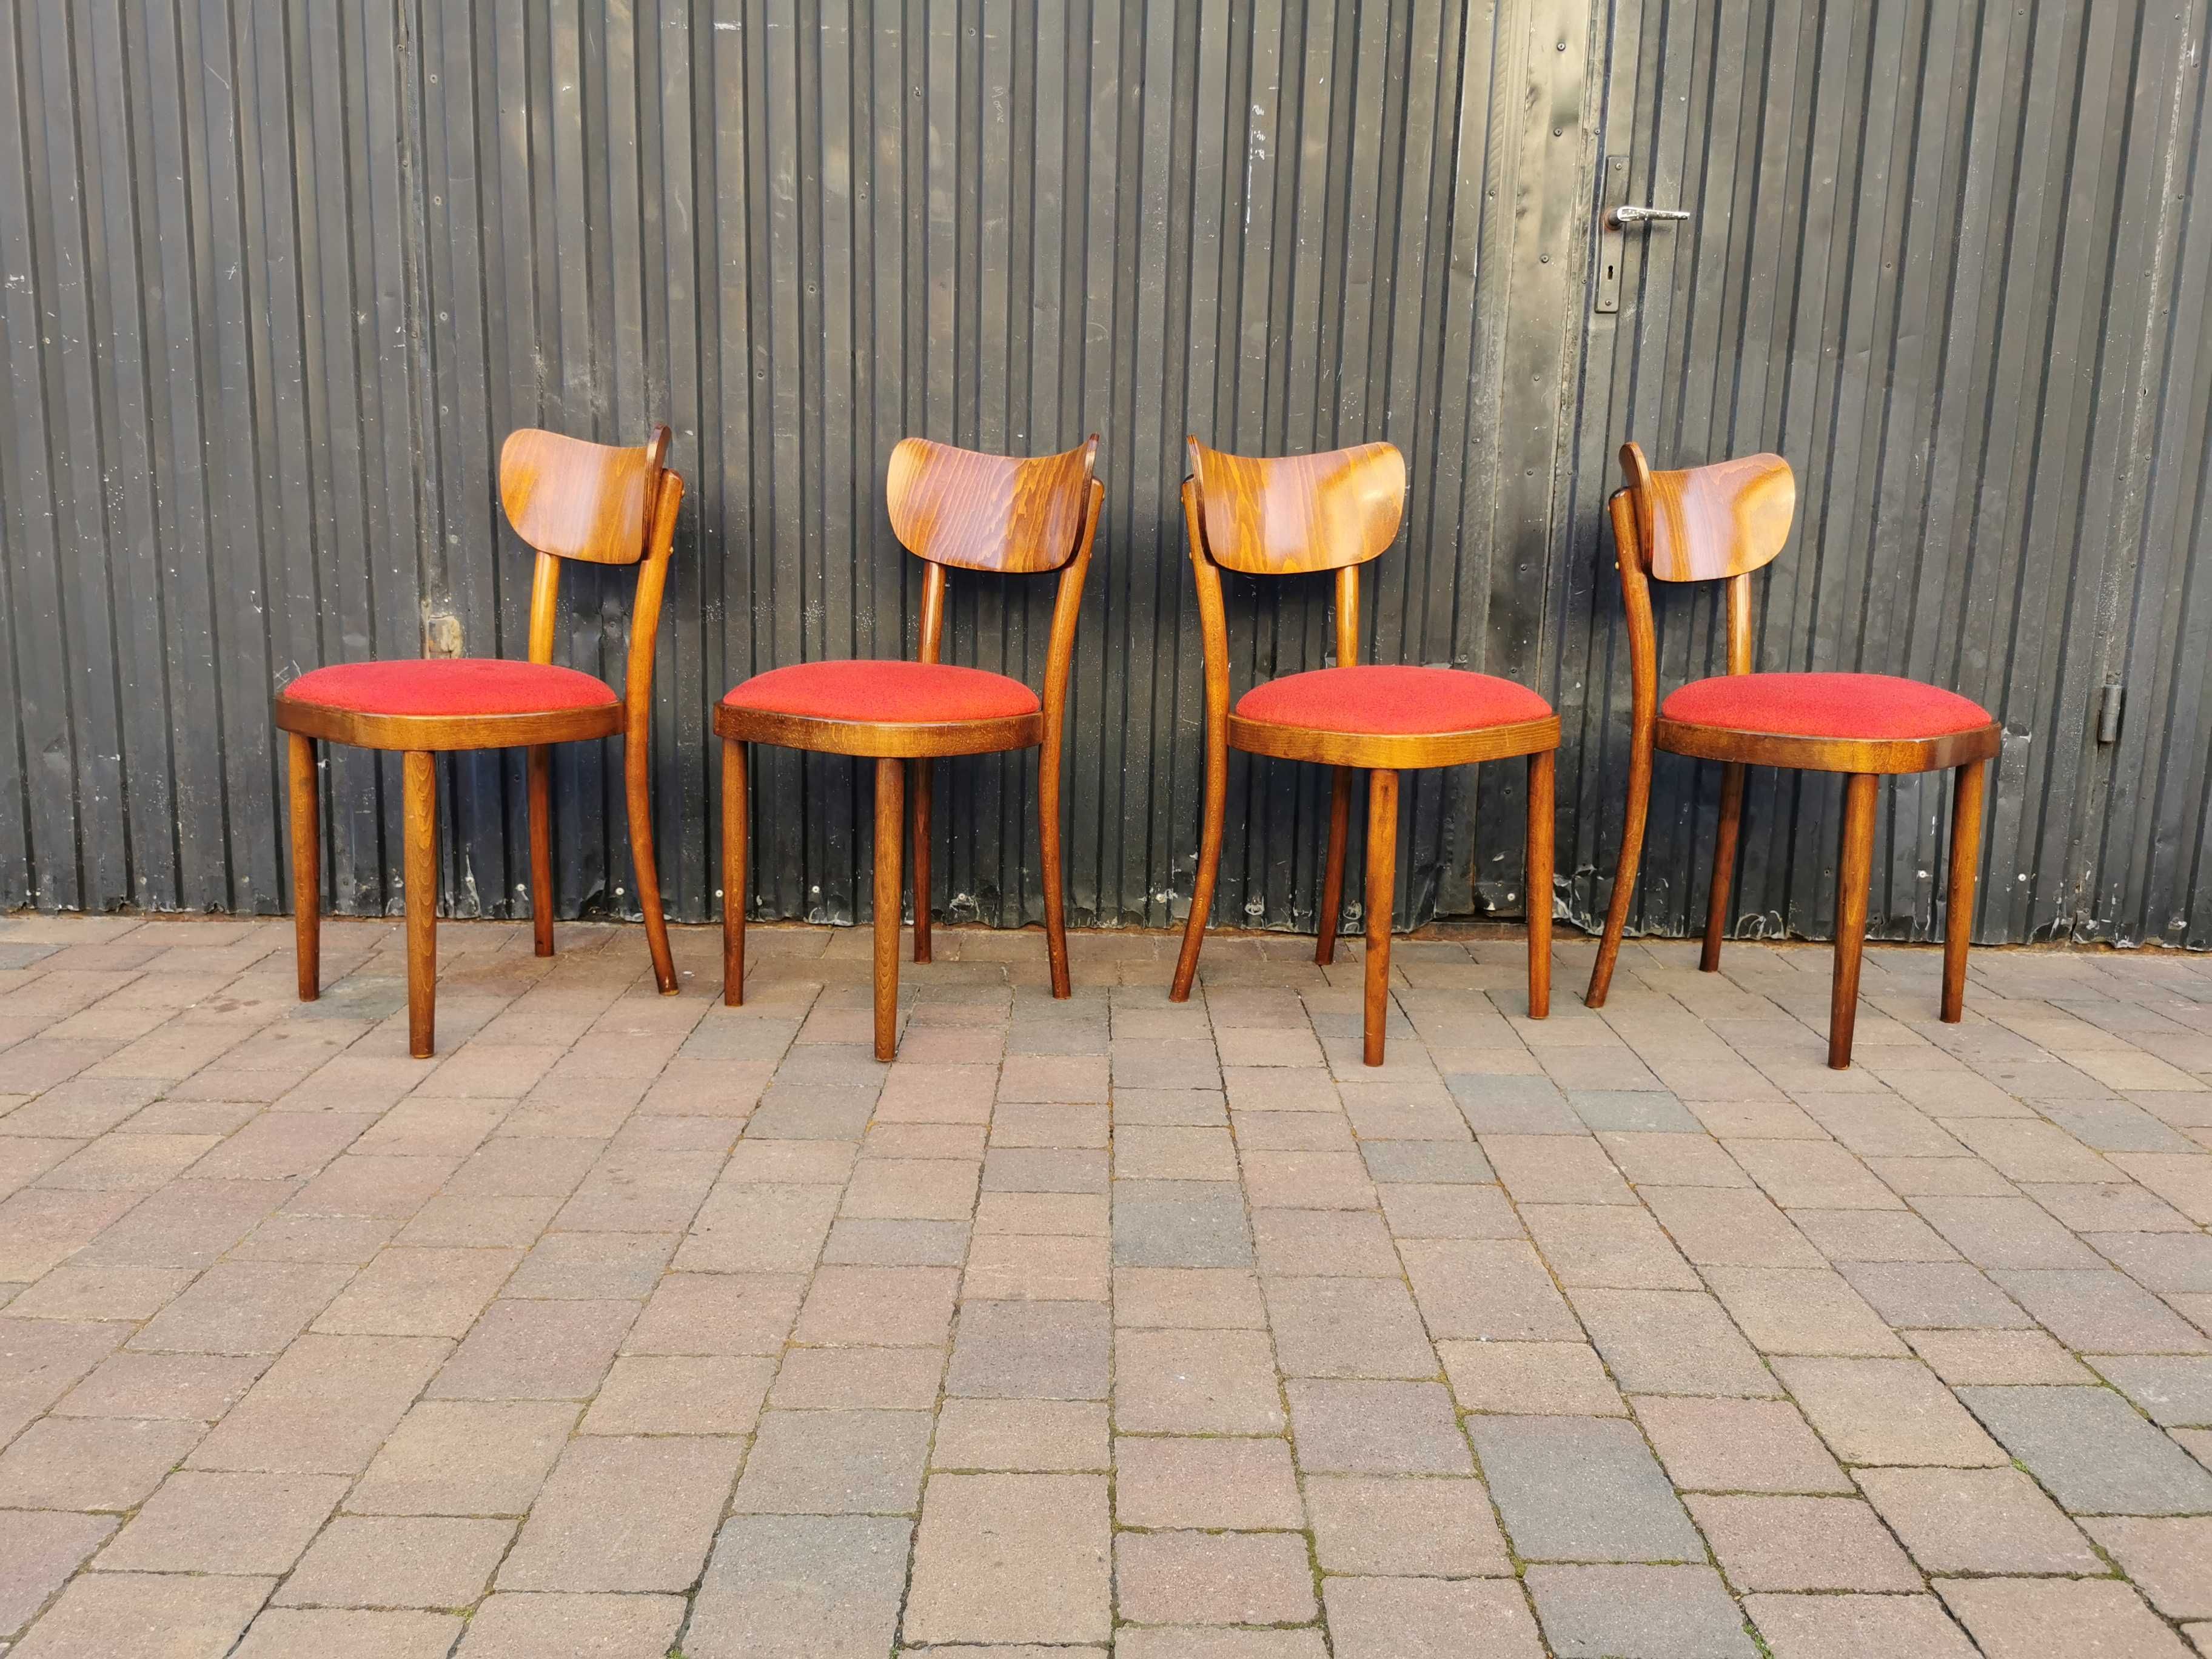 Krzesła TON (Thonet), Czechosłowacja '60, Vintage, PRL design, Retro